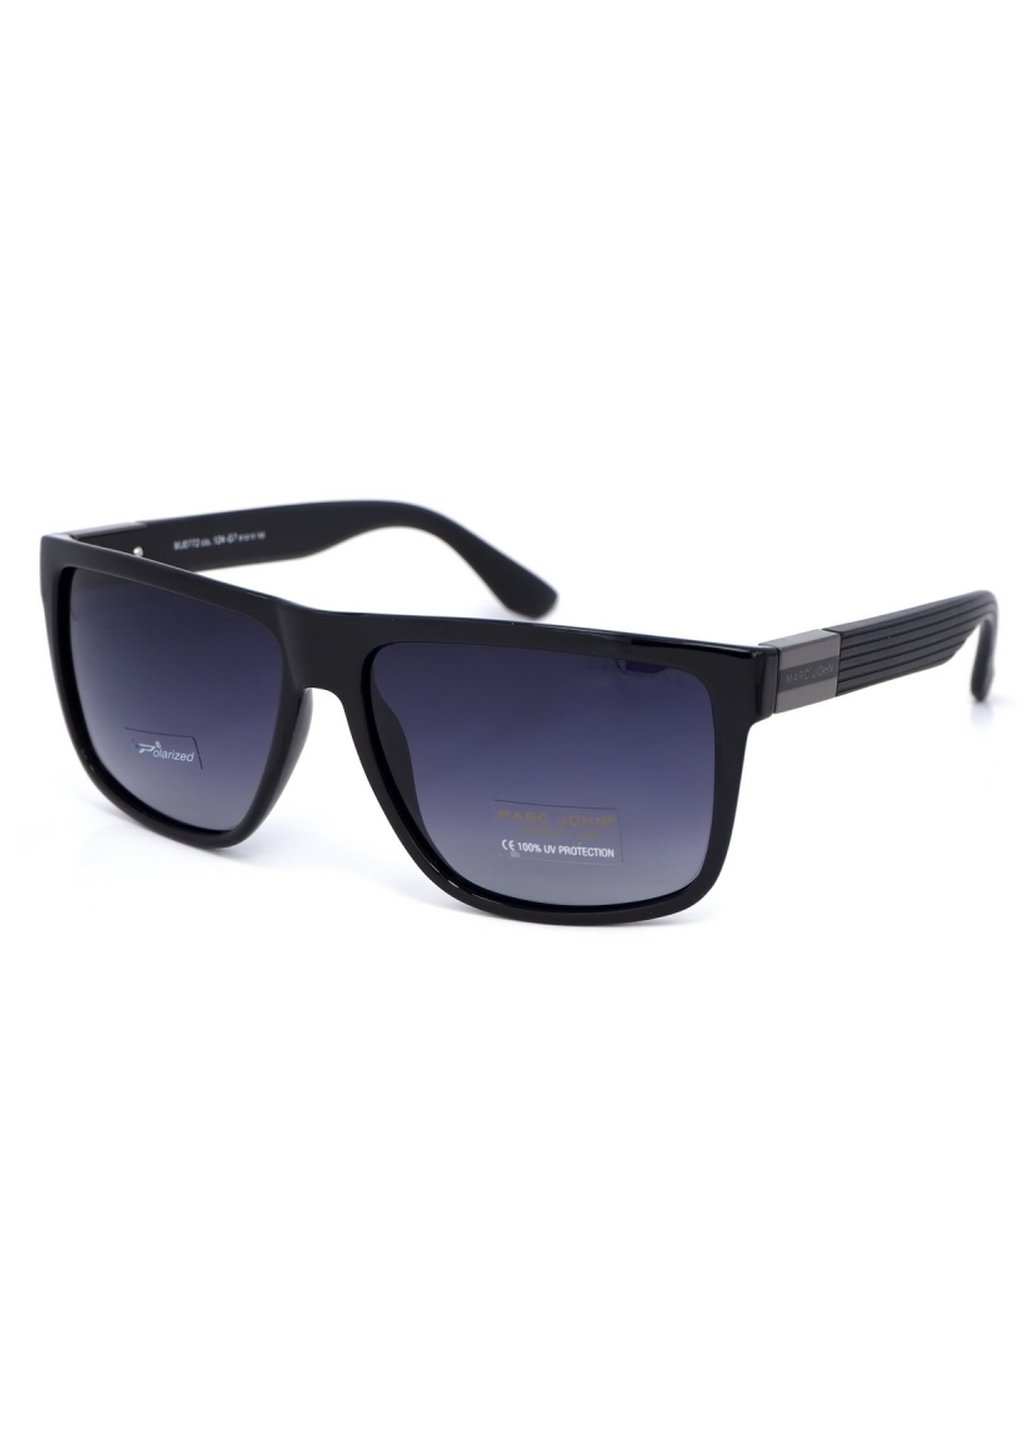 Купить Мужские солнцезащитные очки Marc John с поляризацией MJ0772 190028 - Черный в интернет-магазине